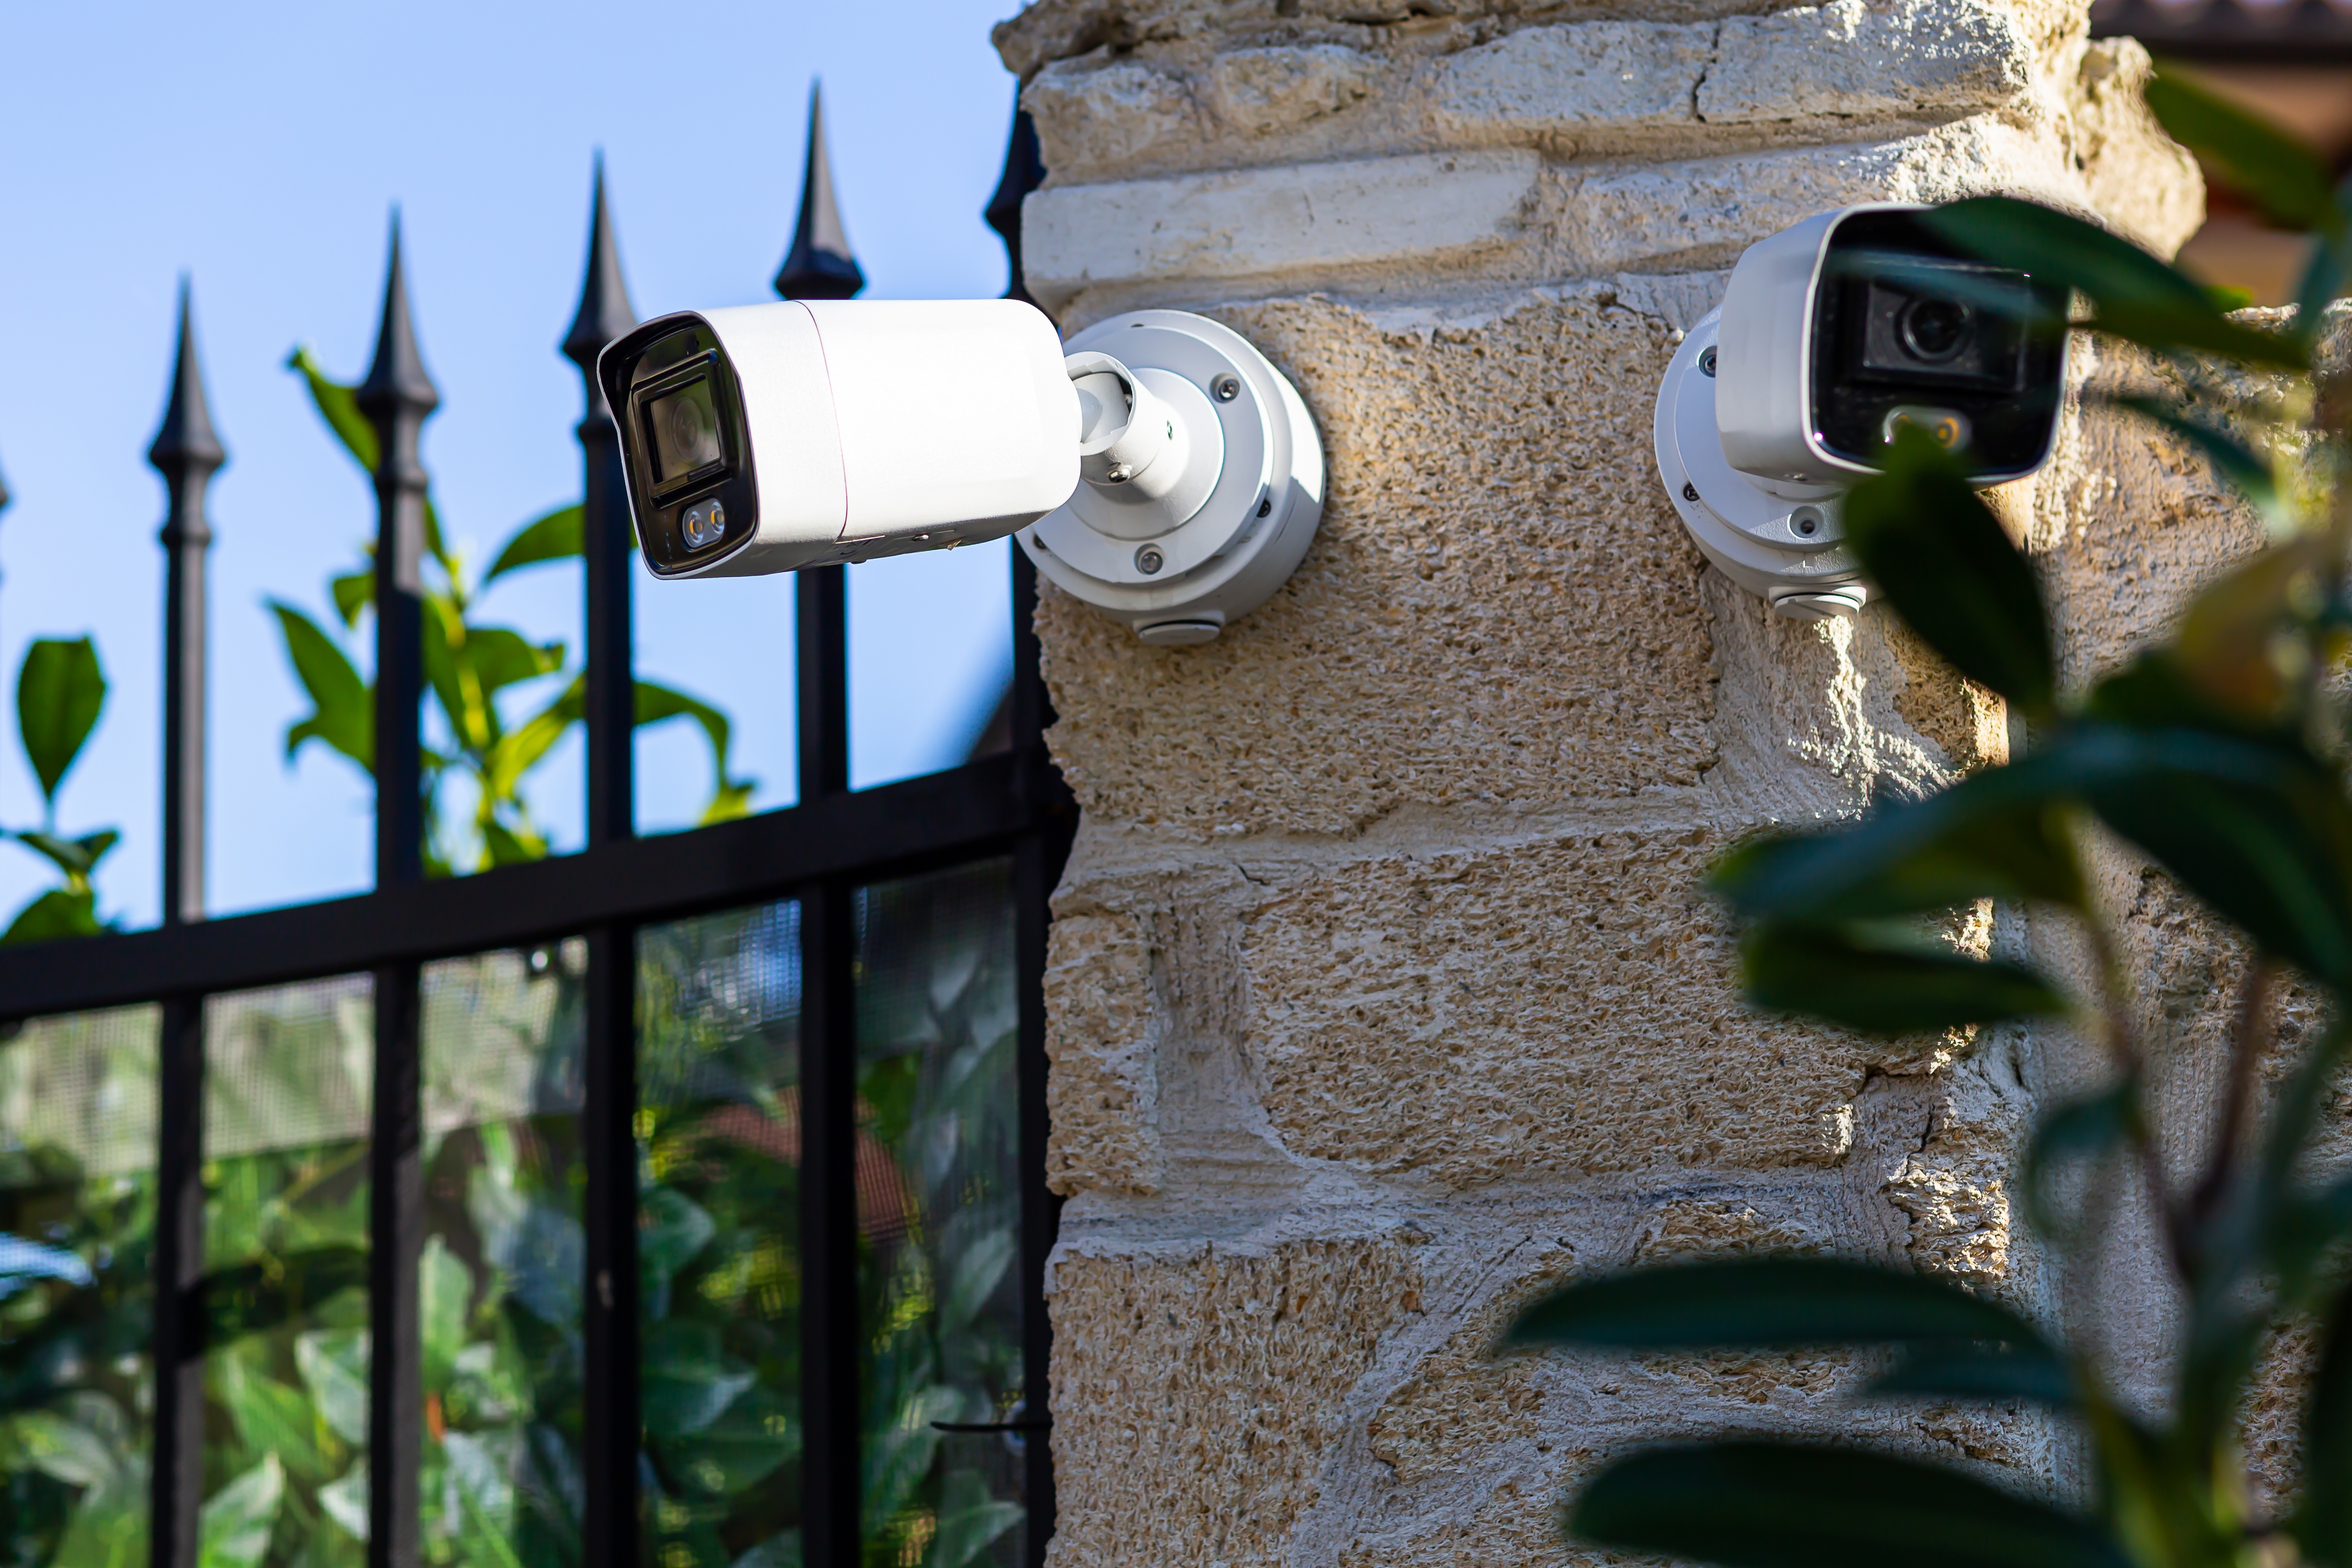 A surveillance camera. | Source: Shutterstock